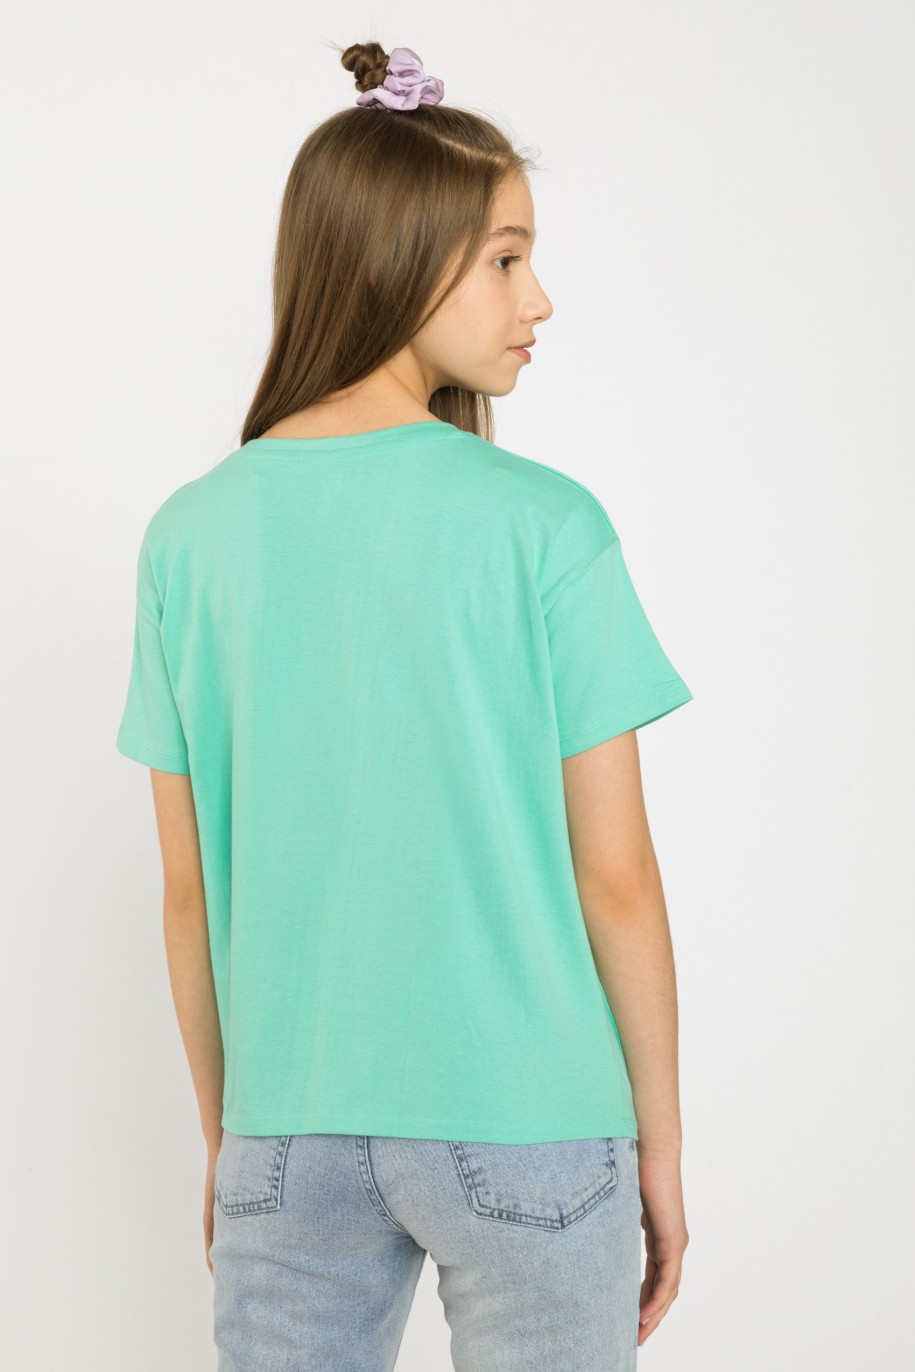 Miętowy t-shirt z nadrukiem SELF CARE dla dziewczyny - 34090